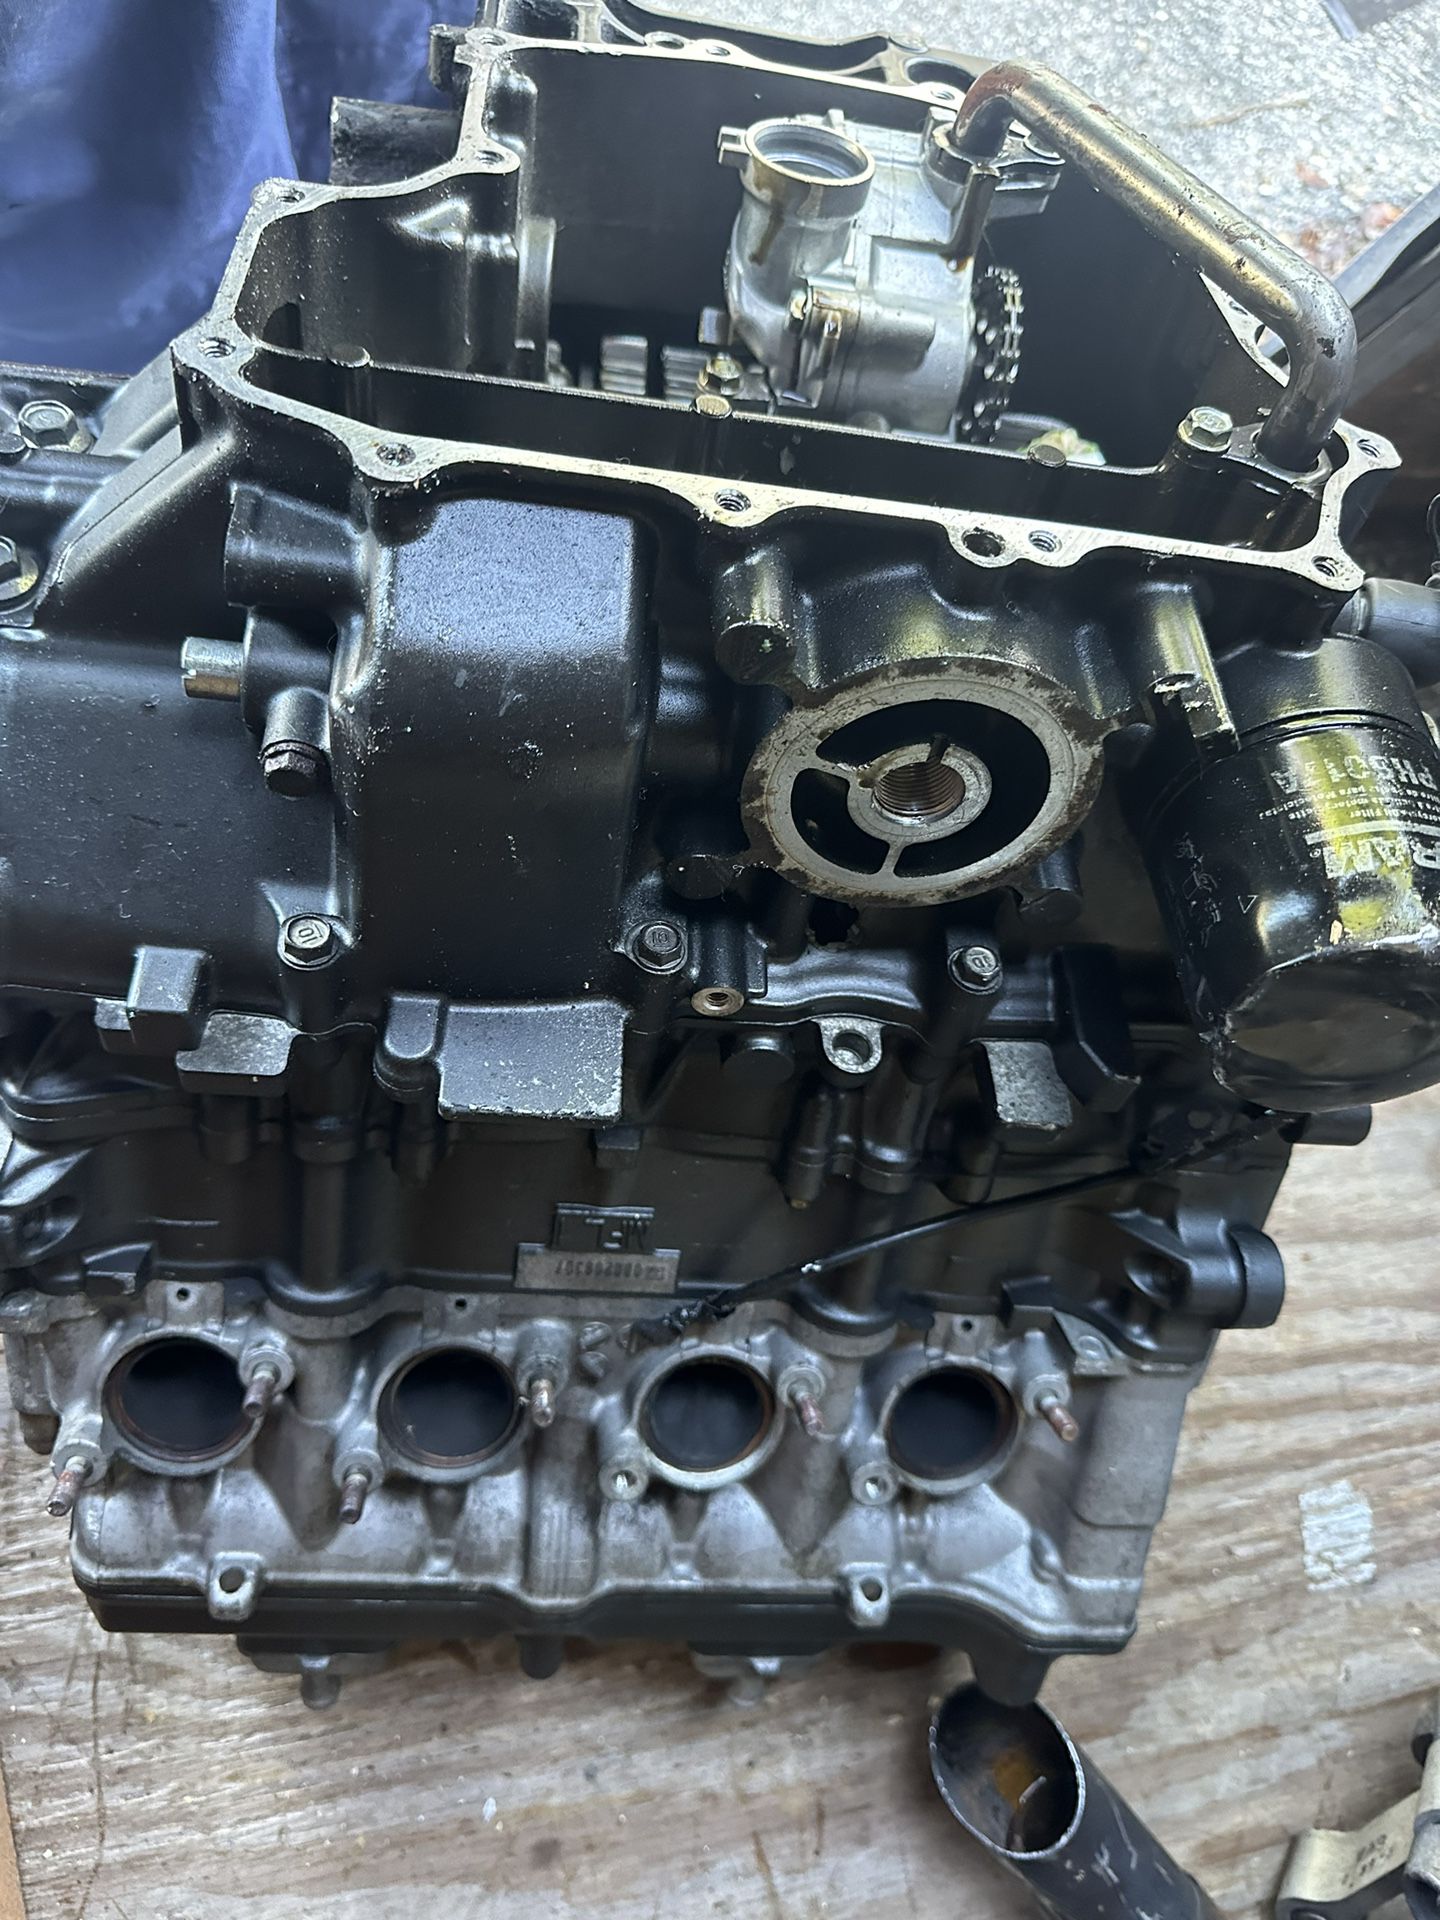 08 Honda CBR1000RR CBR 1000 RR Parts Motor Engine - Read Description CBR1000